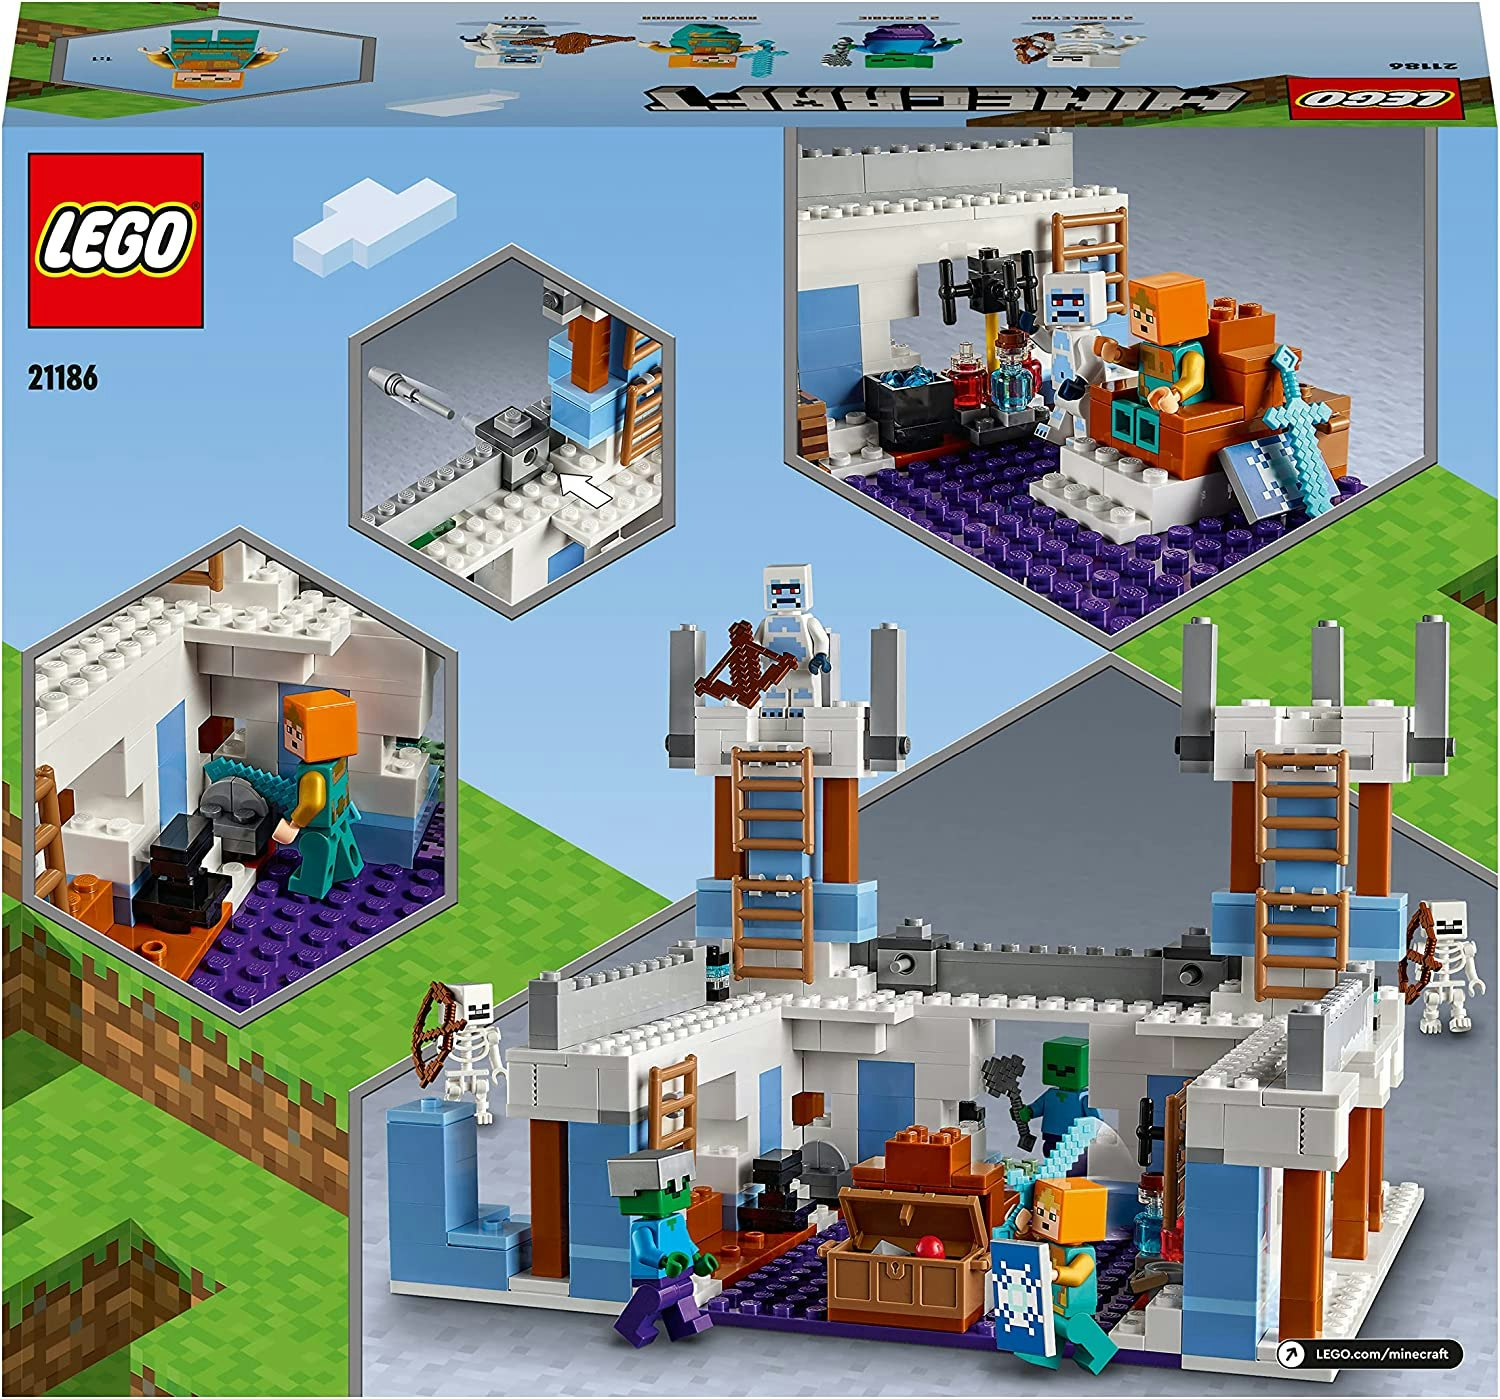 LEGO 21186 Minecraft Isslottet Byggleksaker, Leksaksslott, Modulärt  Byggset, Presentidé med Minifigu - Minibossen.se